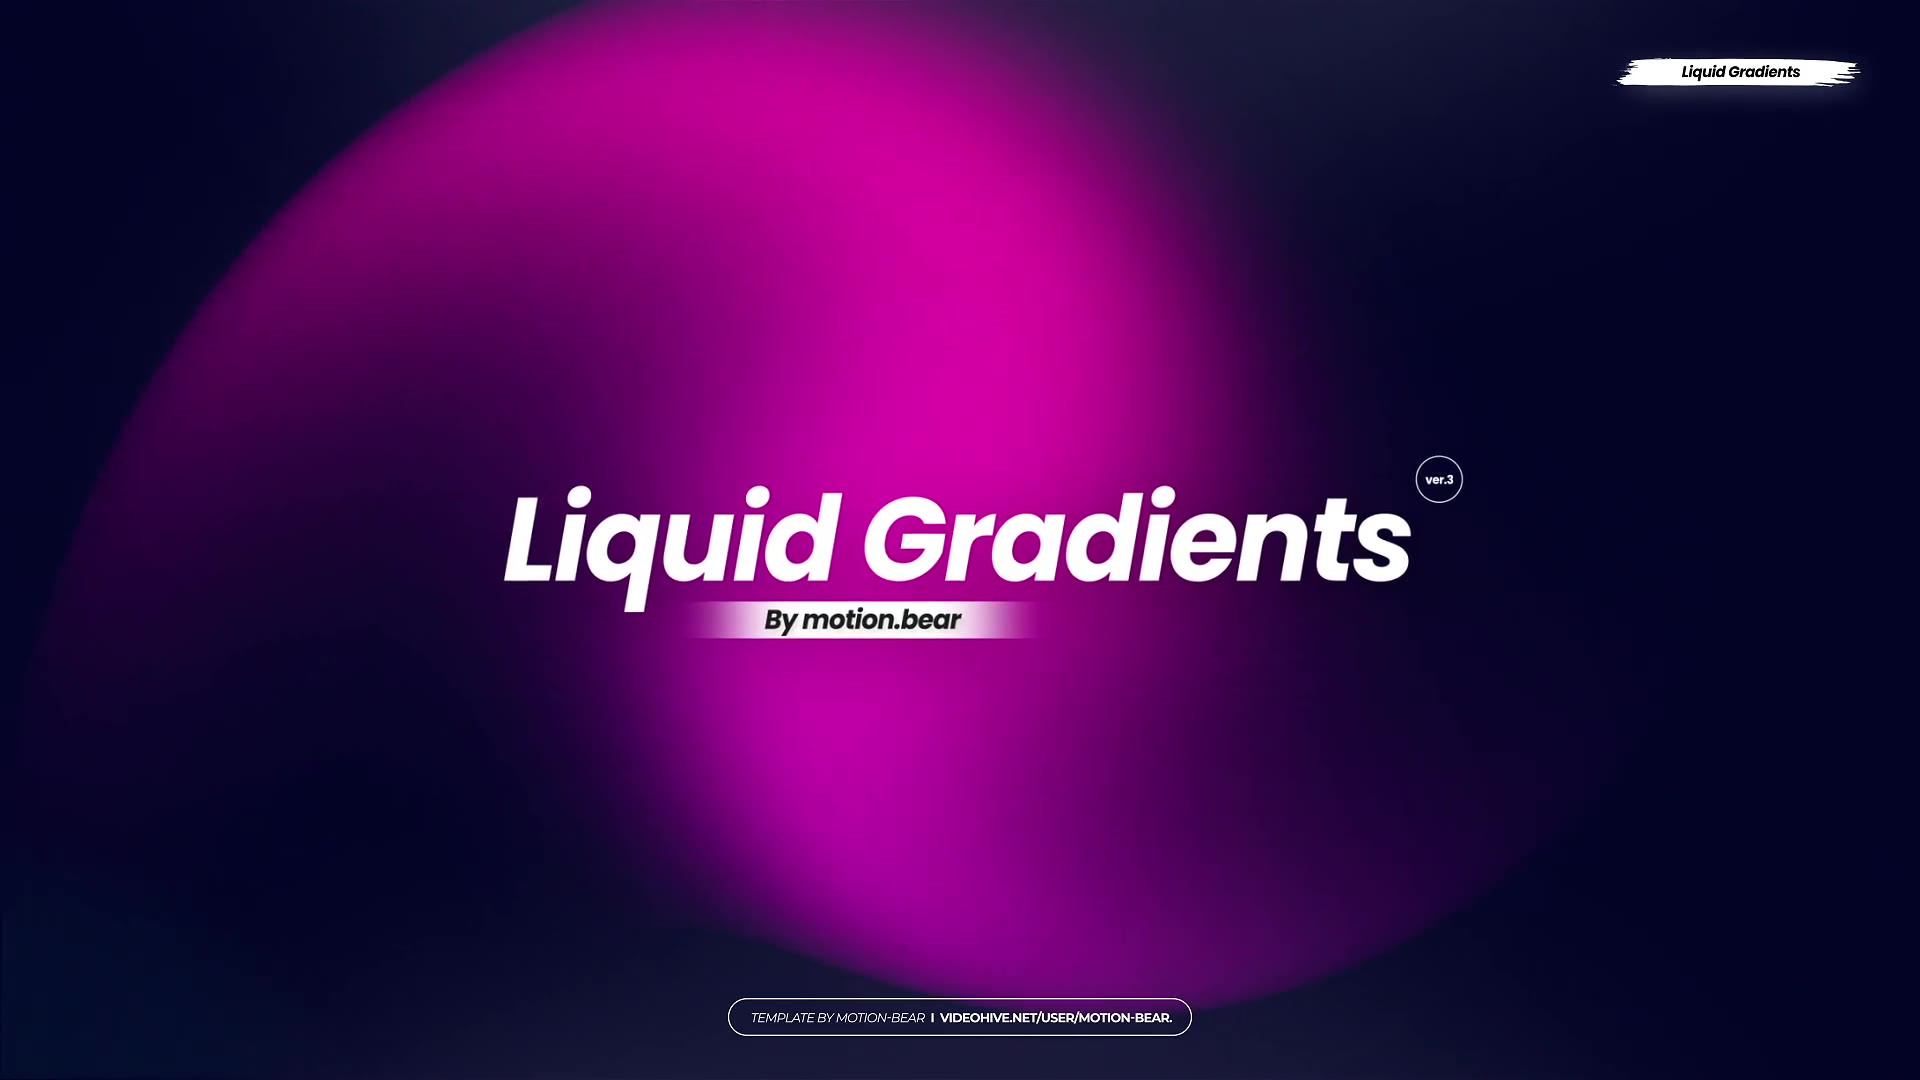 Liquid Gradients Pack 02 Premiere Pro Videohive 39744703 Premiere Pro Image 10